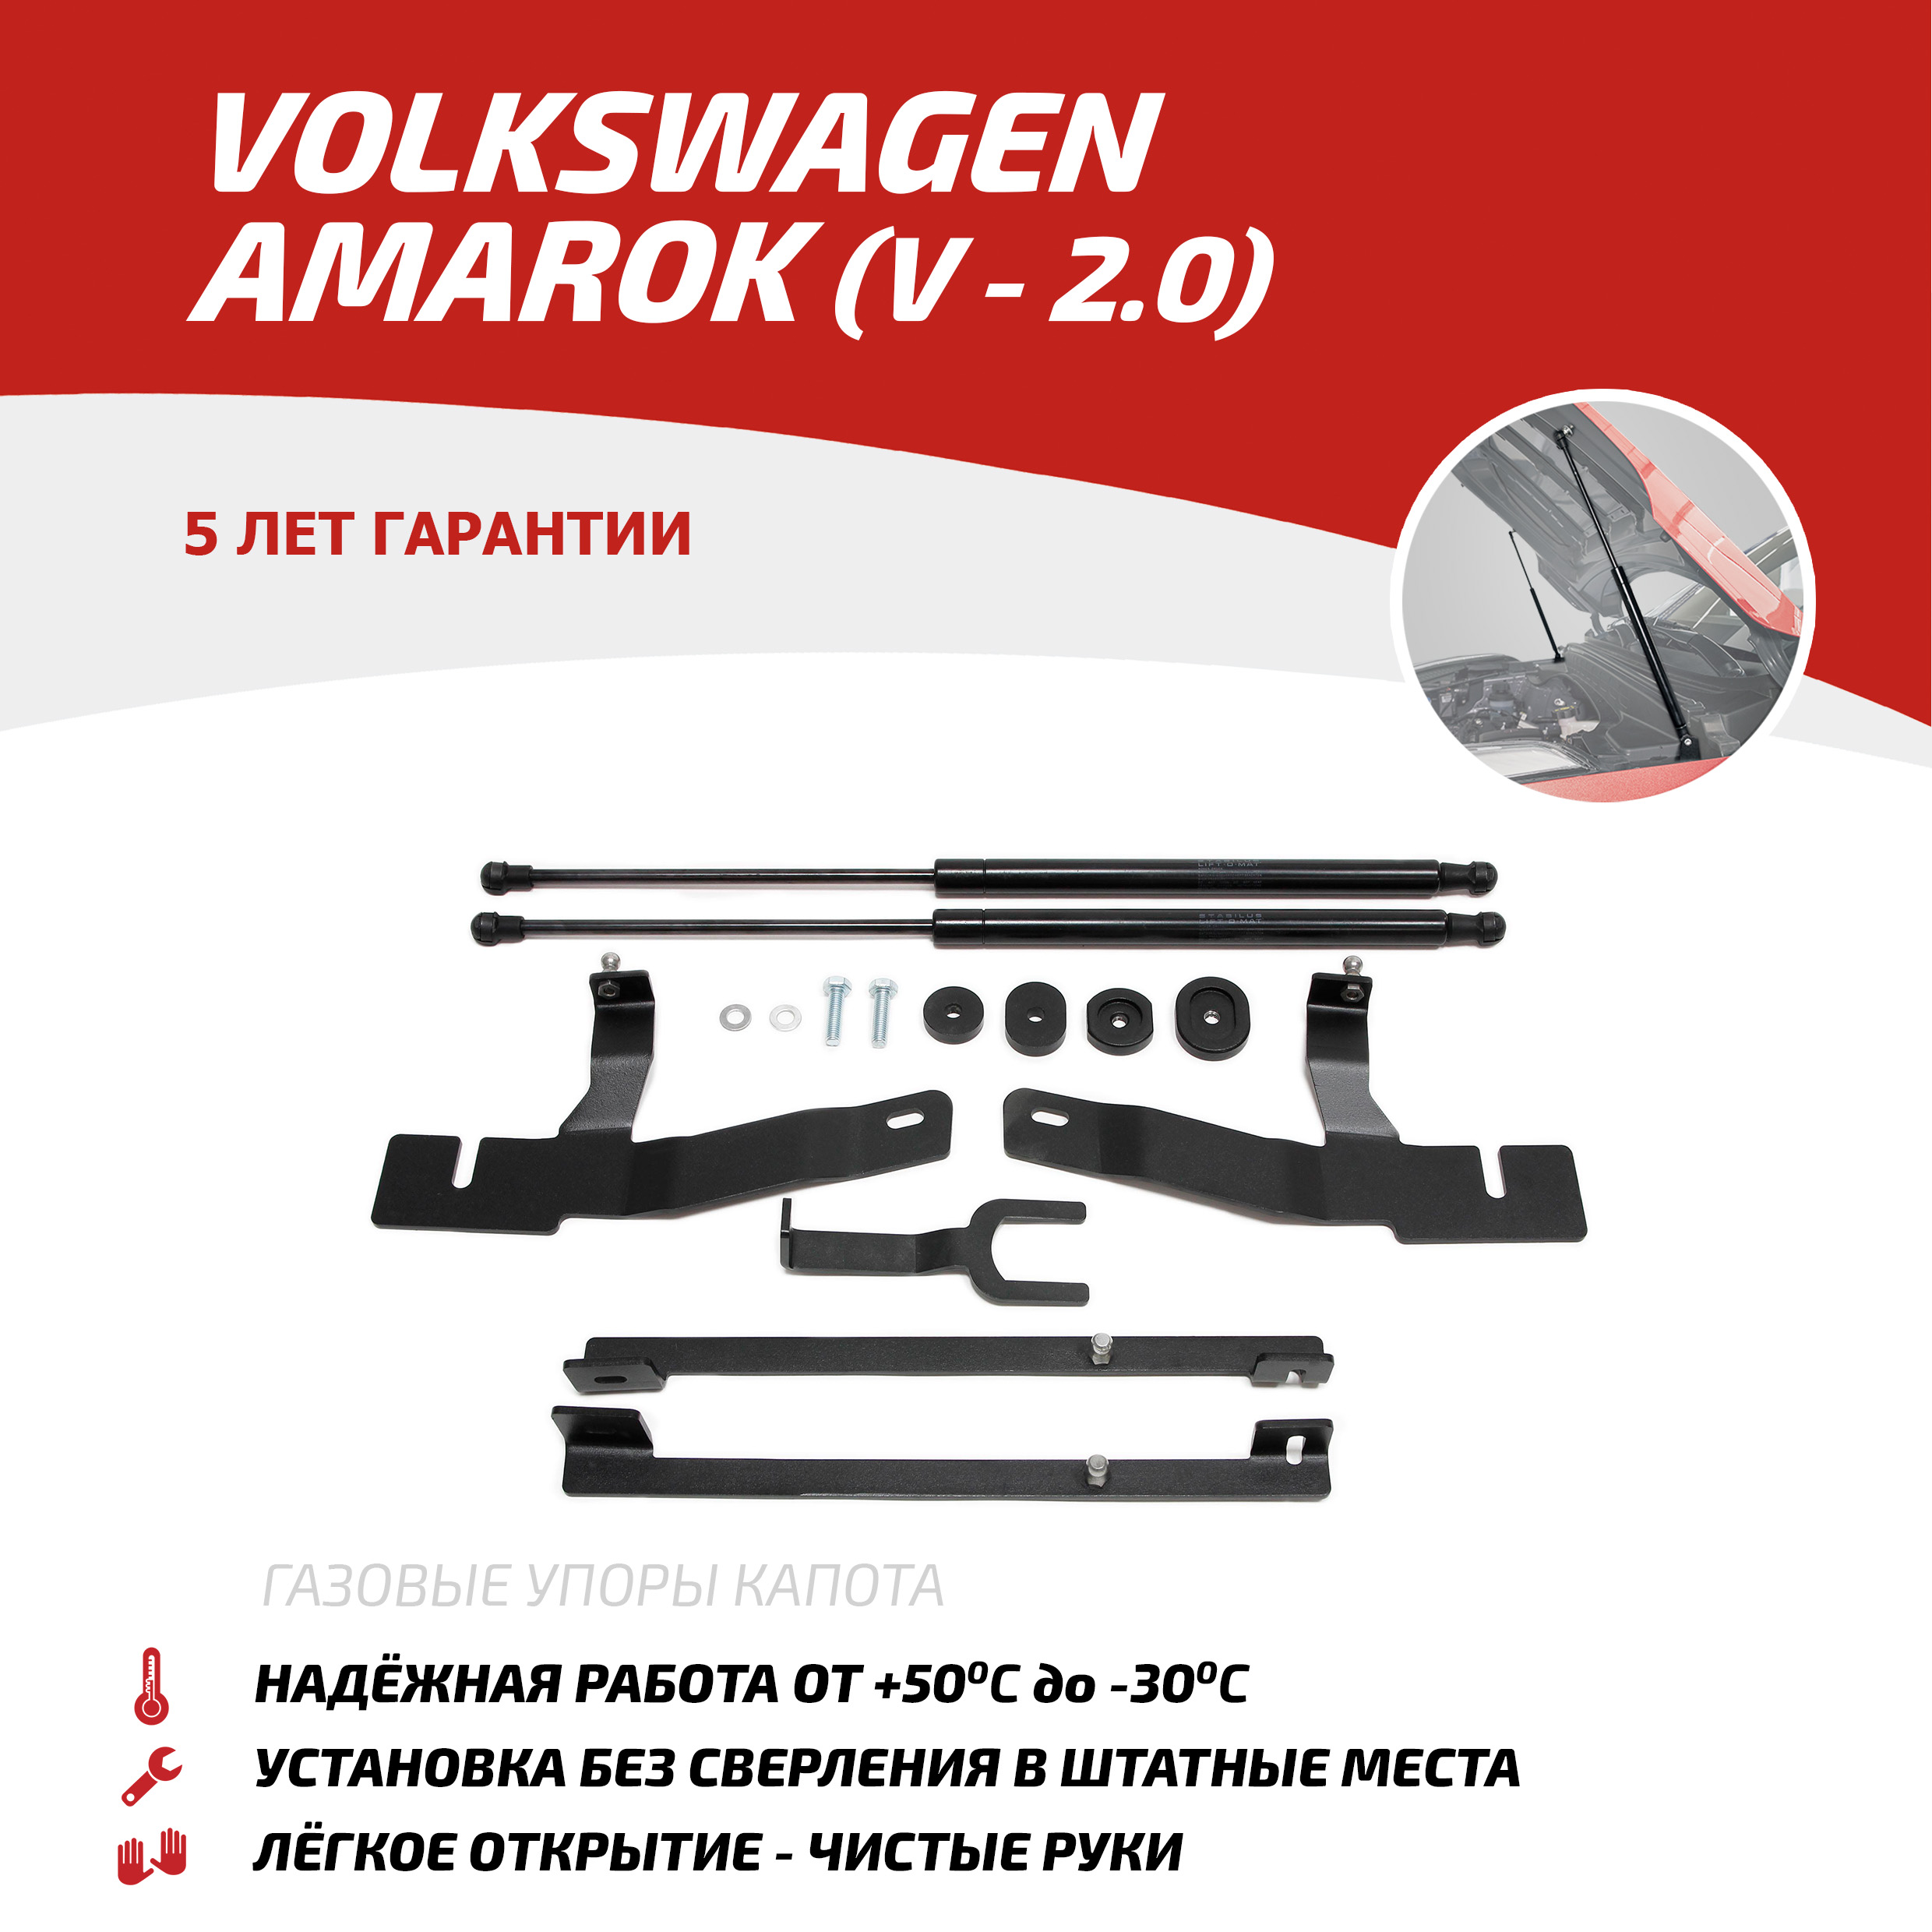 Газовые упоры капота АвтоУпор для VW Amarok (V - 2.0) 2010-04.2017, 2 шт., UVWAMA011